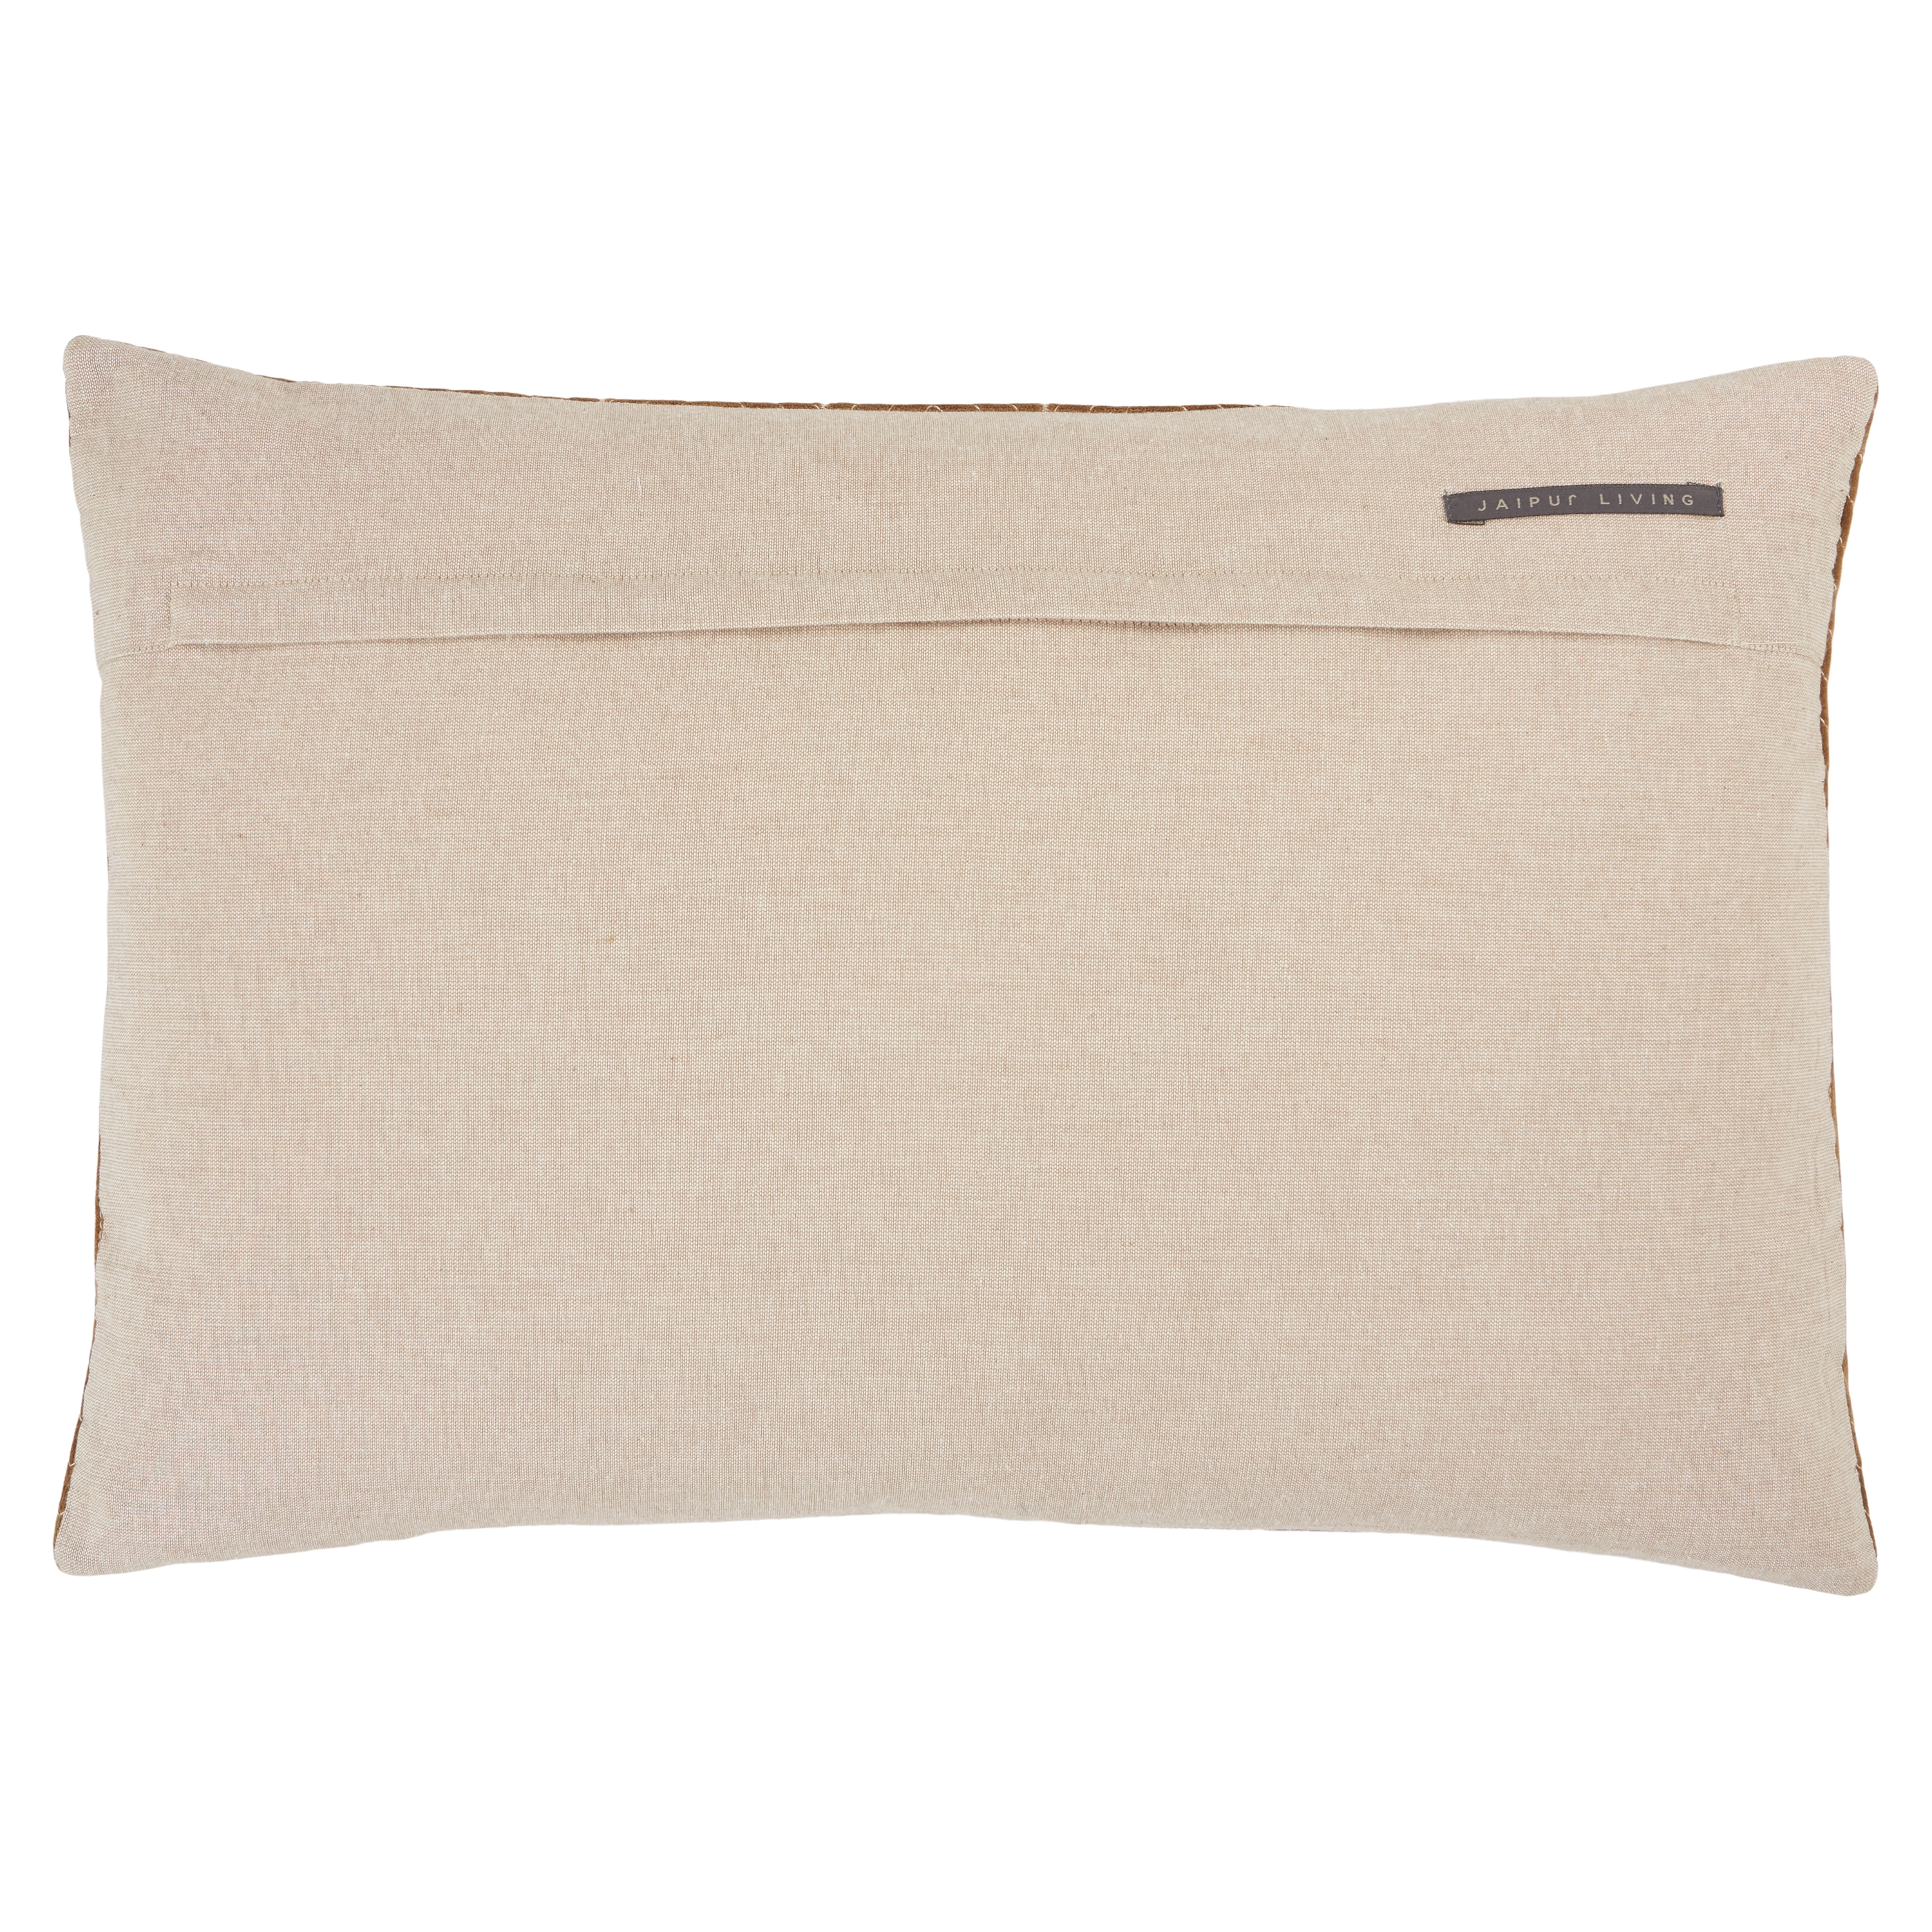 Bergen Lumbar Pillow, 24" x 16" - polyester insert - Image 1